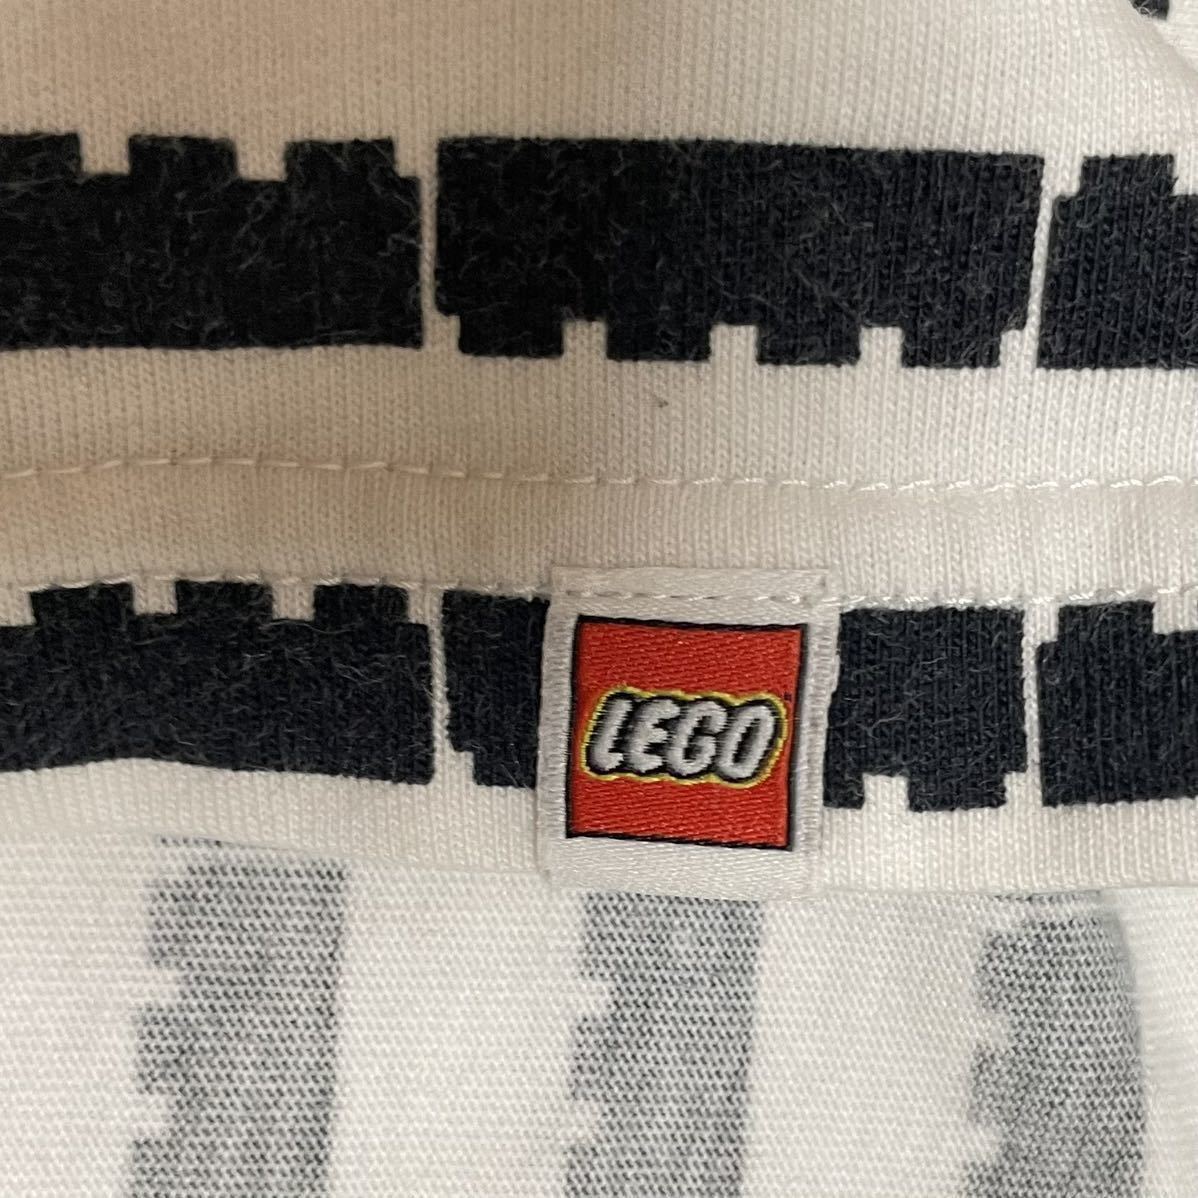 ユニクロ【UNIQLO】UT LEGO レゴコラボグラフィック半袖Tシャツ Sサイズ ブラック×ホワイト/黒白 レゴ好きなキッズにも♪コレクションにも